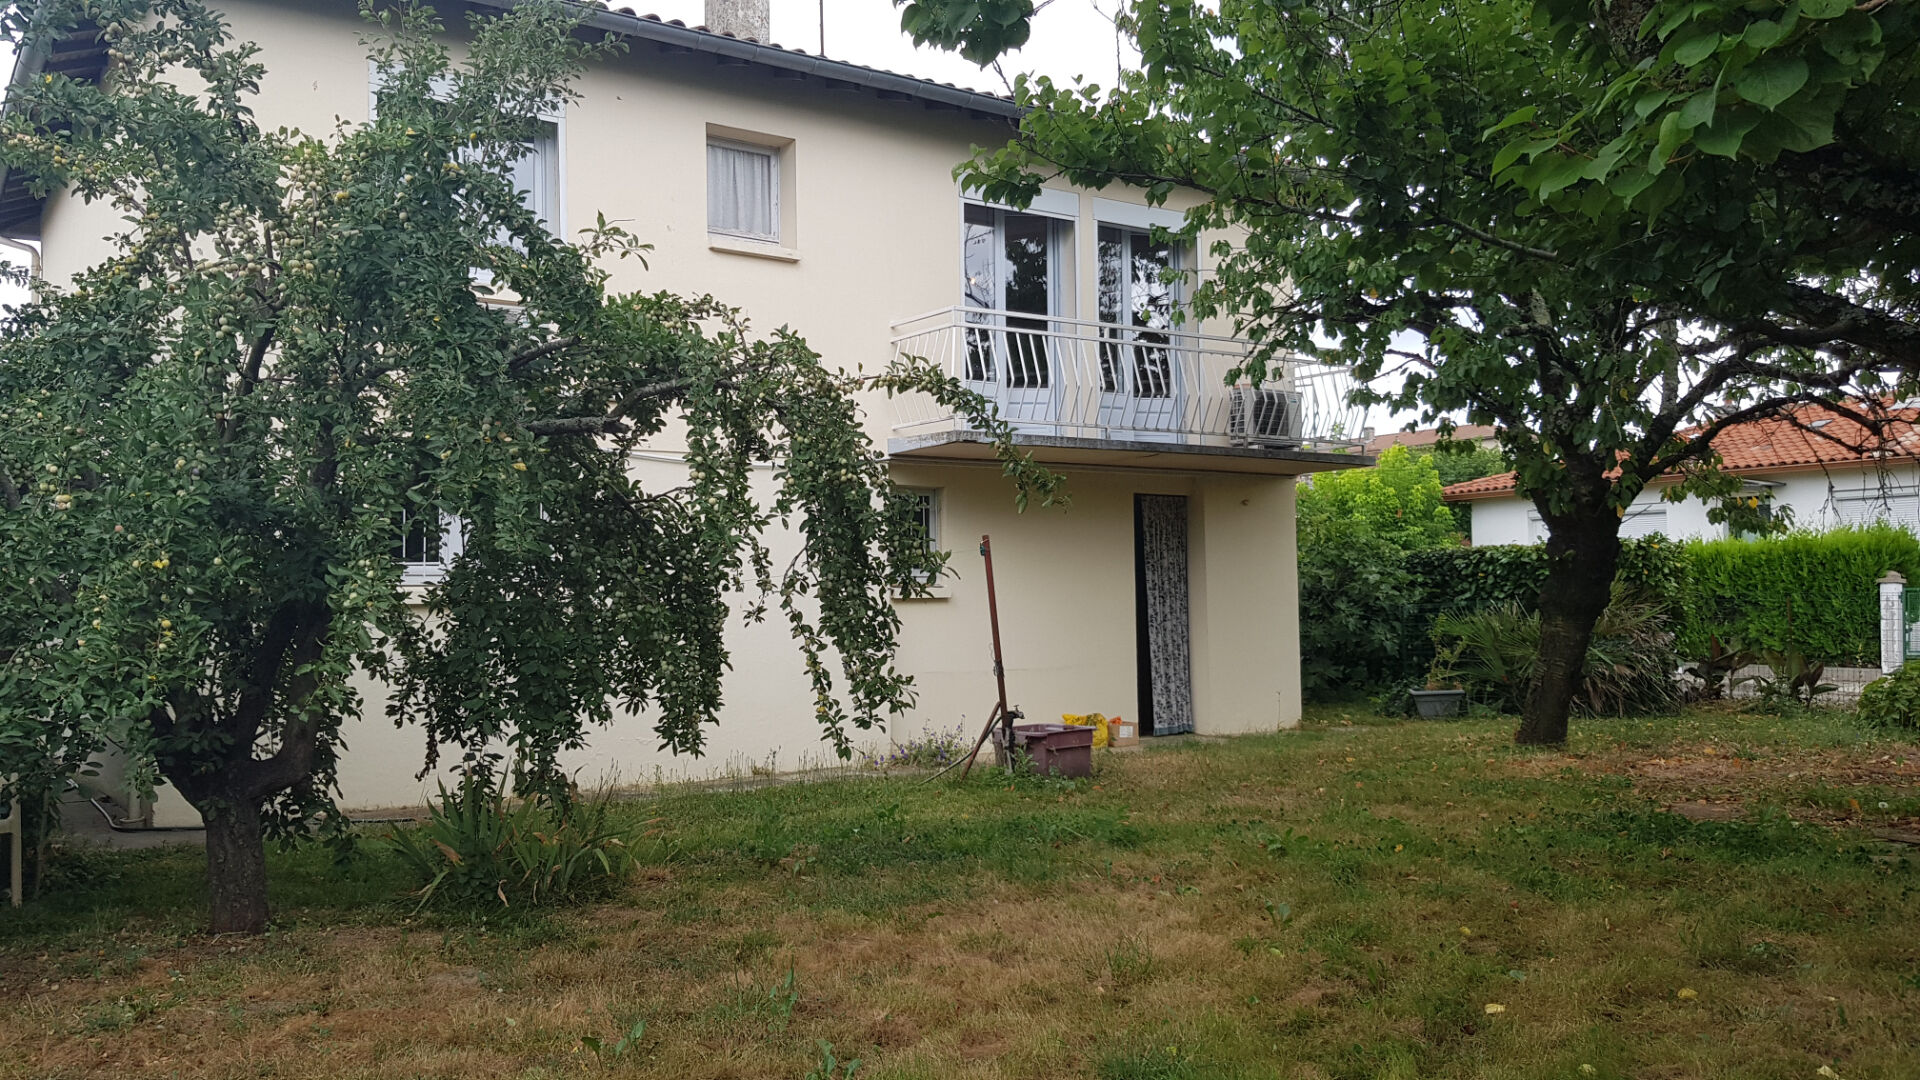 Maison Villemur Sur Tarn 3 pièces 80 m2 avec jardin et garage